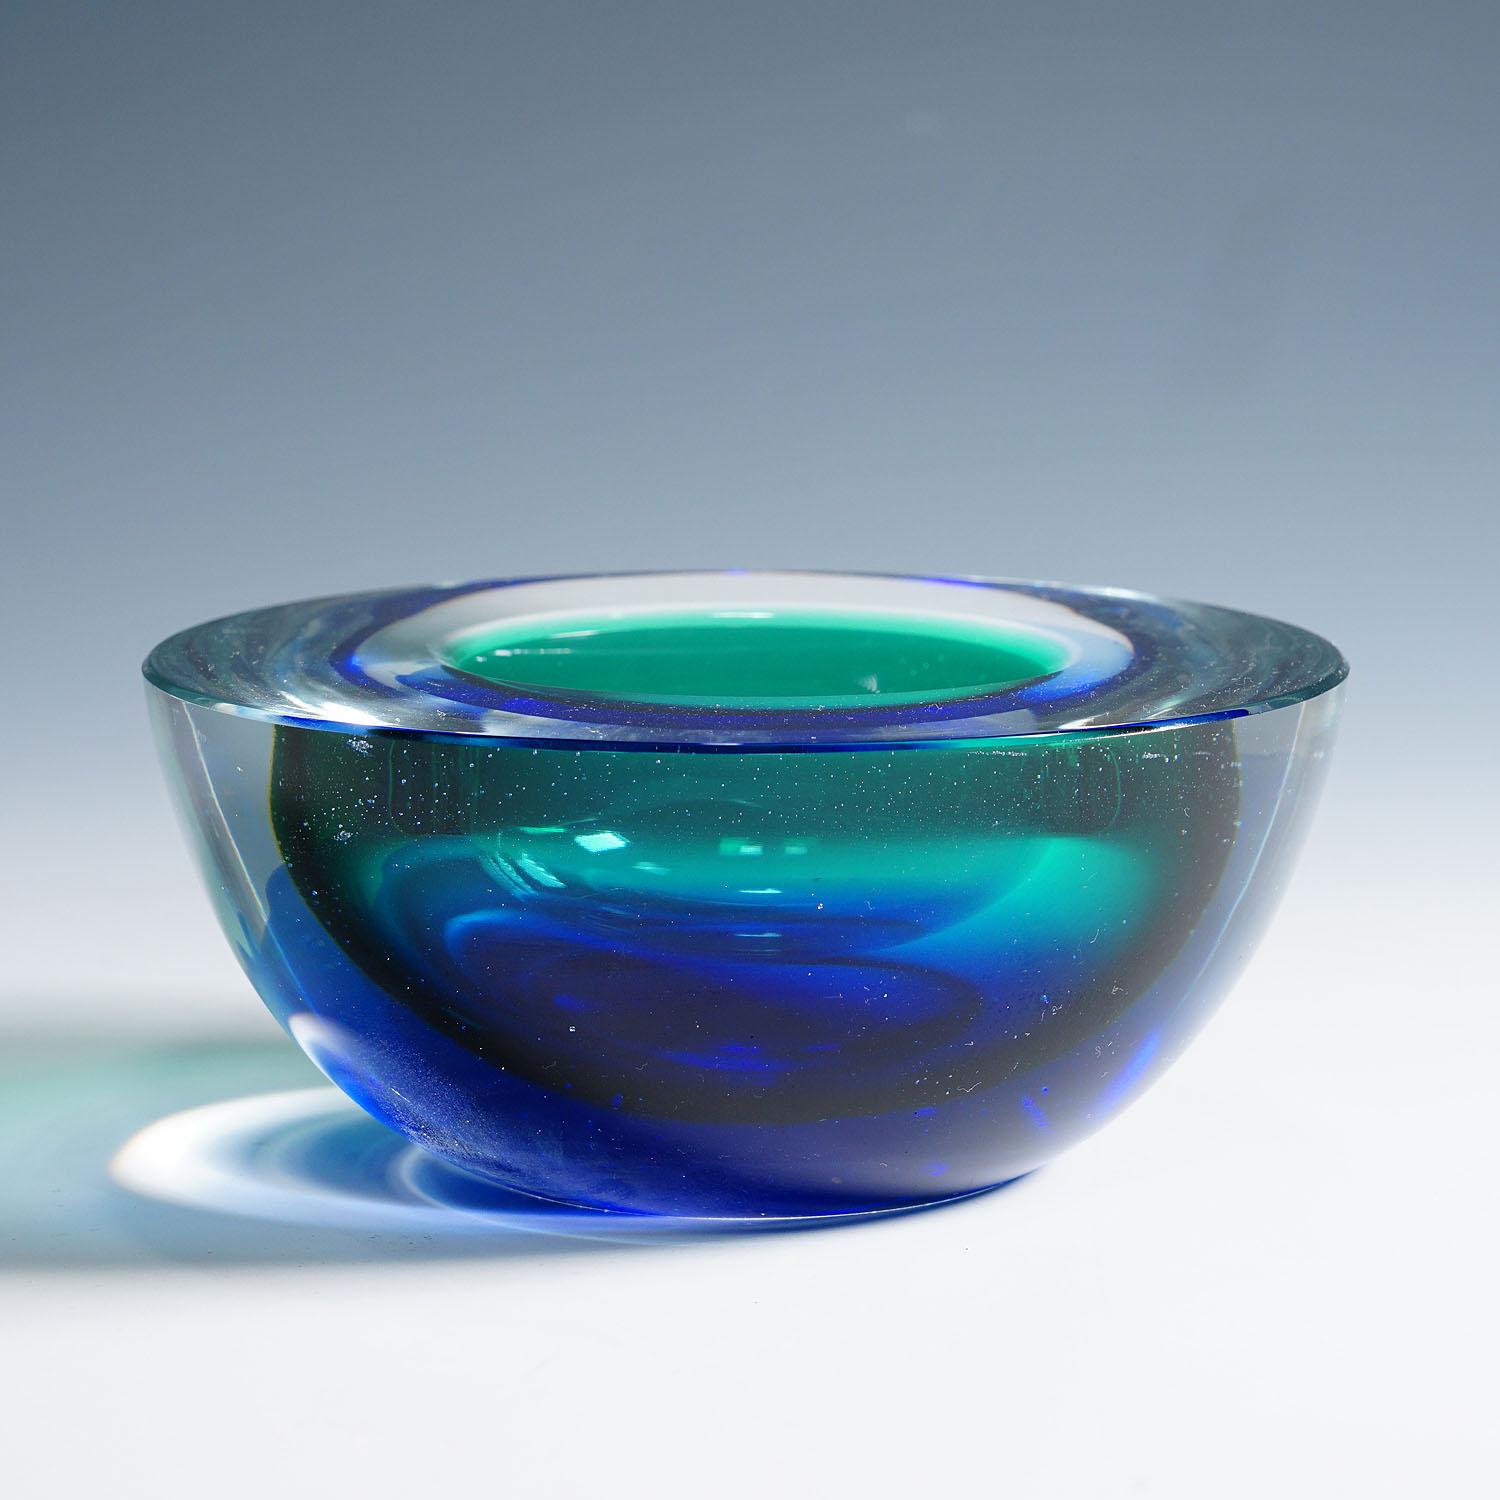 Bol géométrique Archimede Seguso en bleu et vert, Murano, Italie, vers les années 1960

Un bol vintage en verre d'art vénitien en forme de géode conçu par Archimede Seguso pour Vetreria Artistica Archimede Seguso vers les années 1960. Verre de